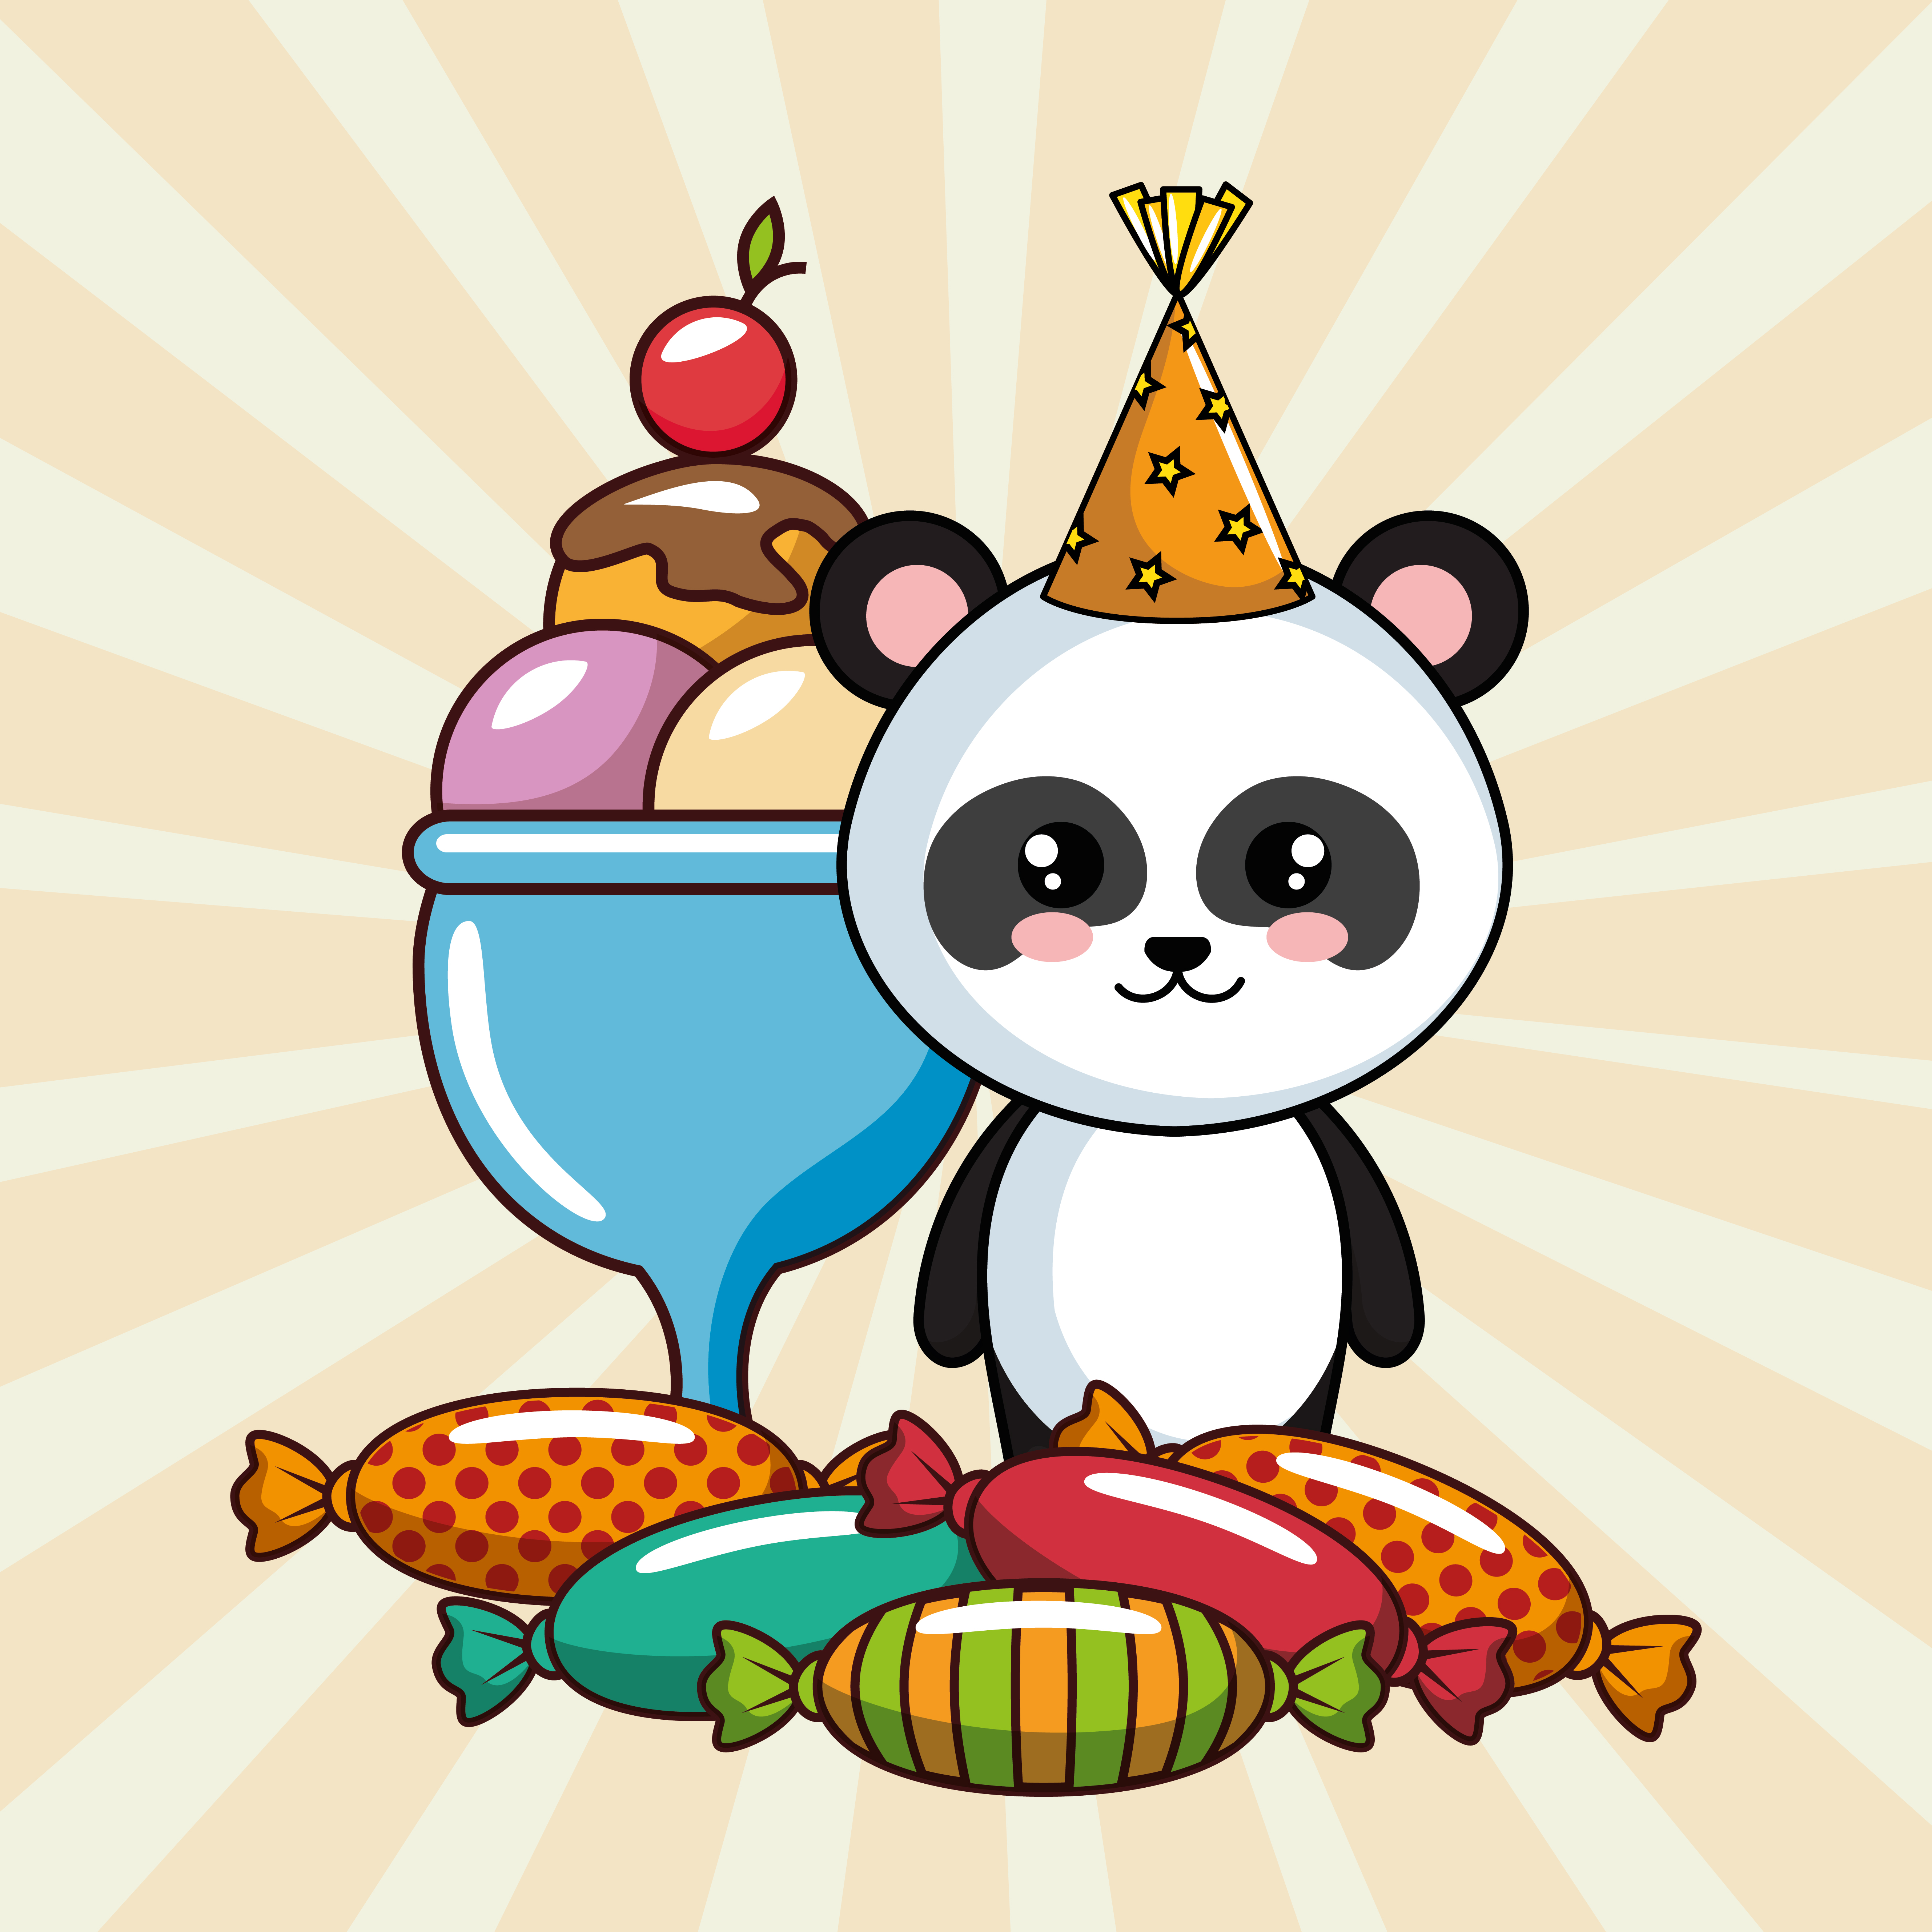 happy birthday card with panda bear and treats 679318 Vector Art at Vecteezy